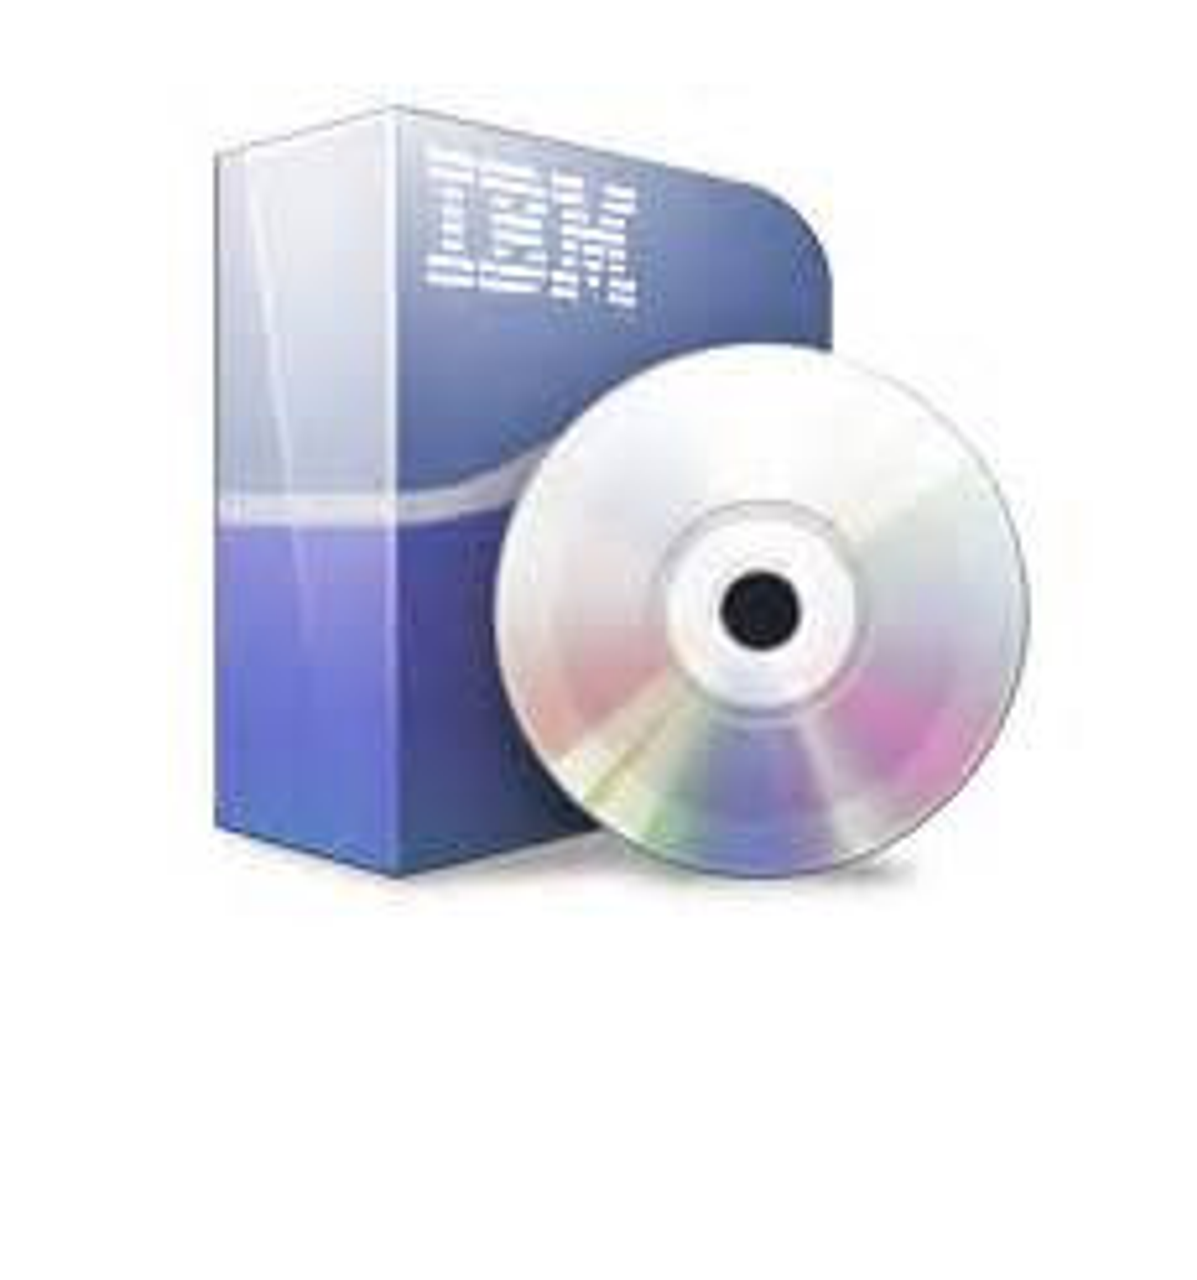 2498-7412 - Brocade Enterprise Bundle for IBM SAN48B-5 (2498-F48) (Does not incl Port Upg)